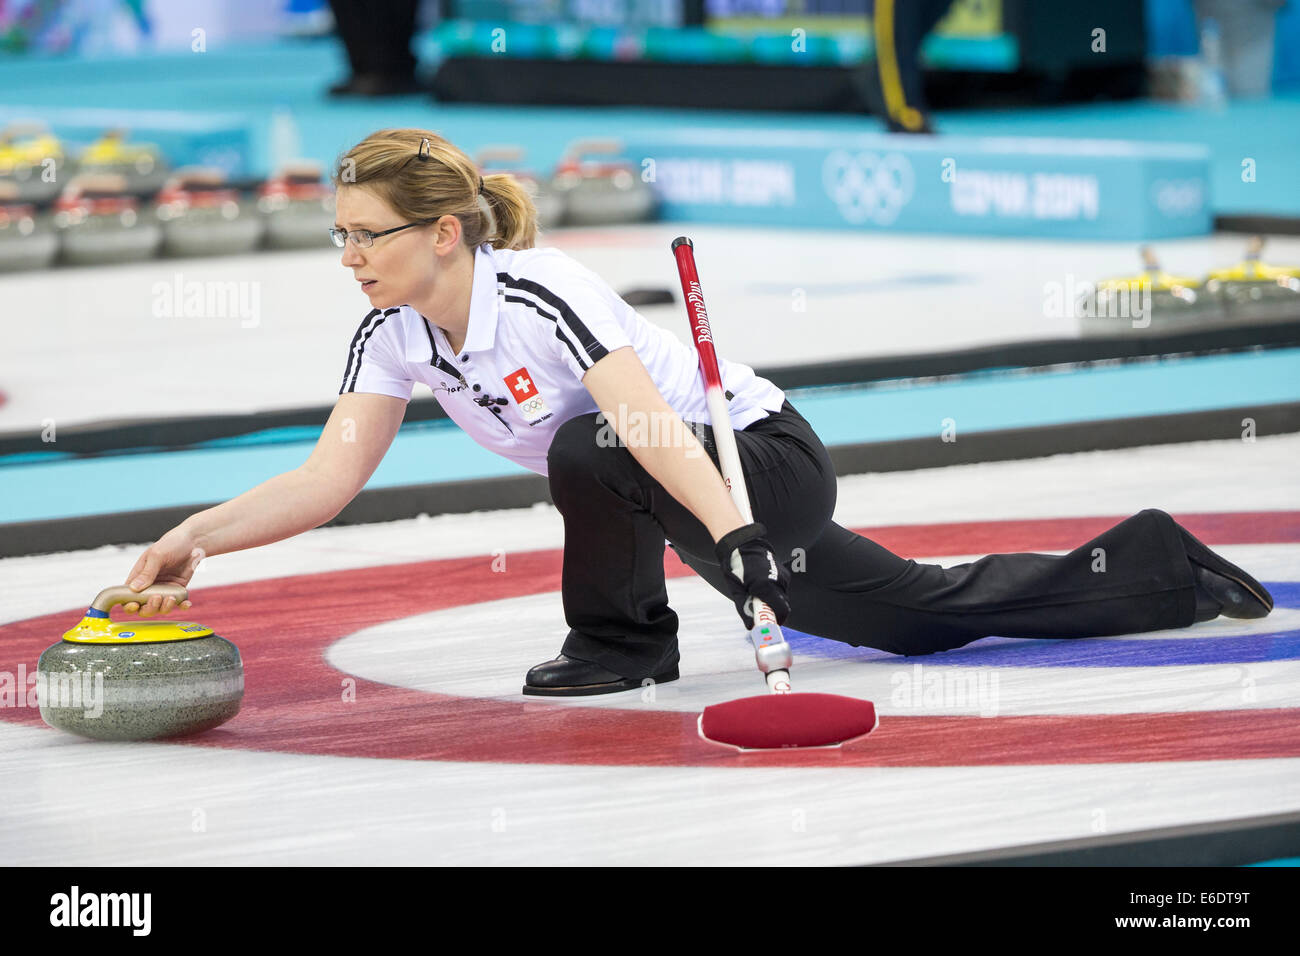 Suisse de l'équipe, Janine Greiner joue une pierre au cours de la compétition de curling aux Jeux Olympiques d'hiver de Sotchi en 2014, Banque D'Images